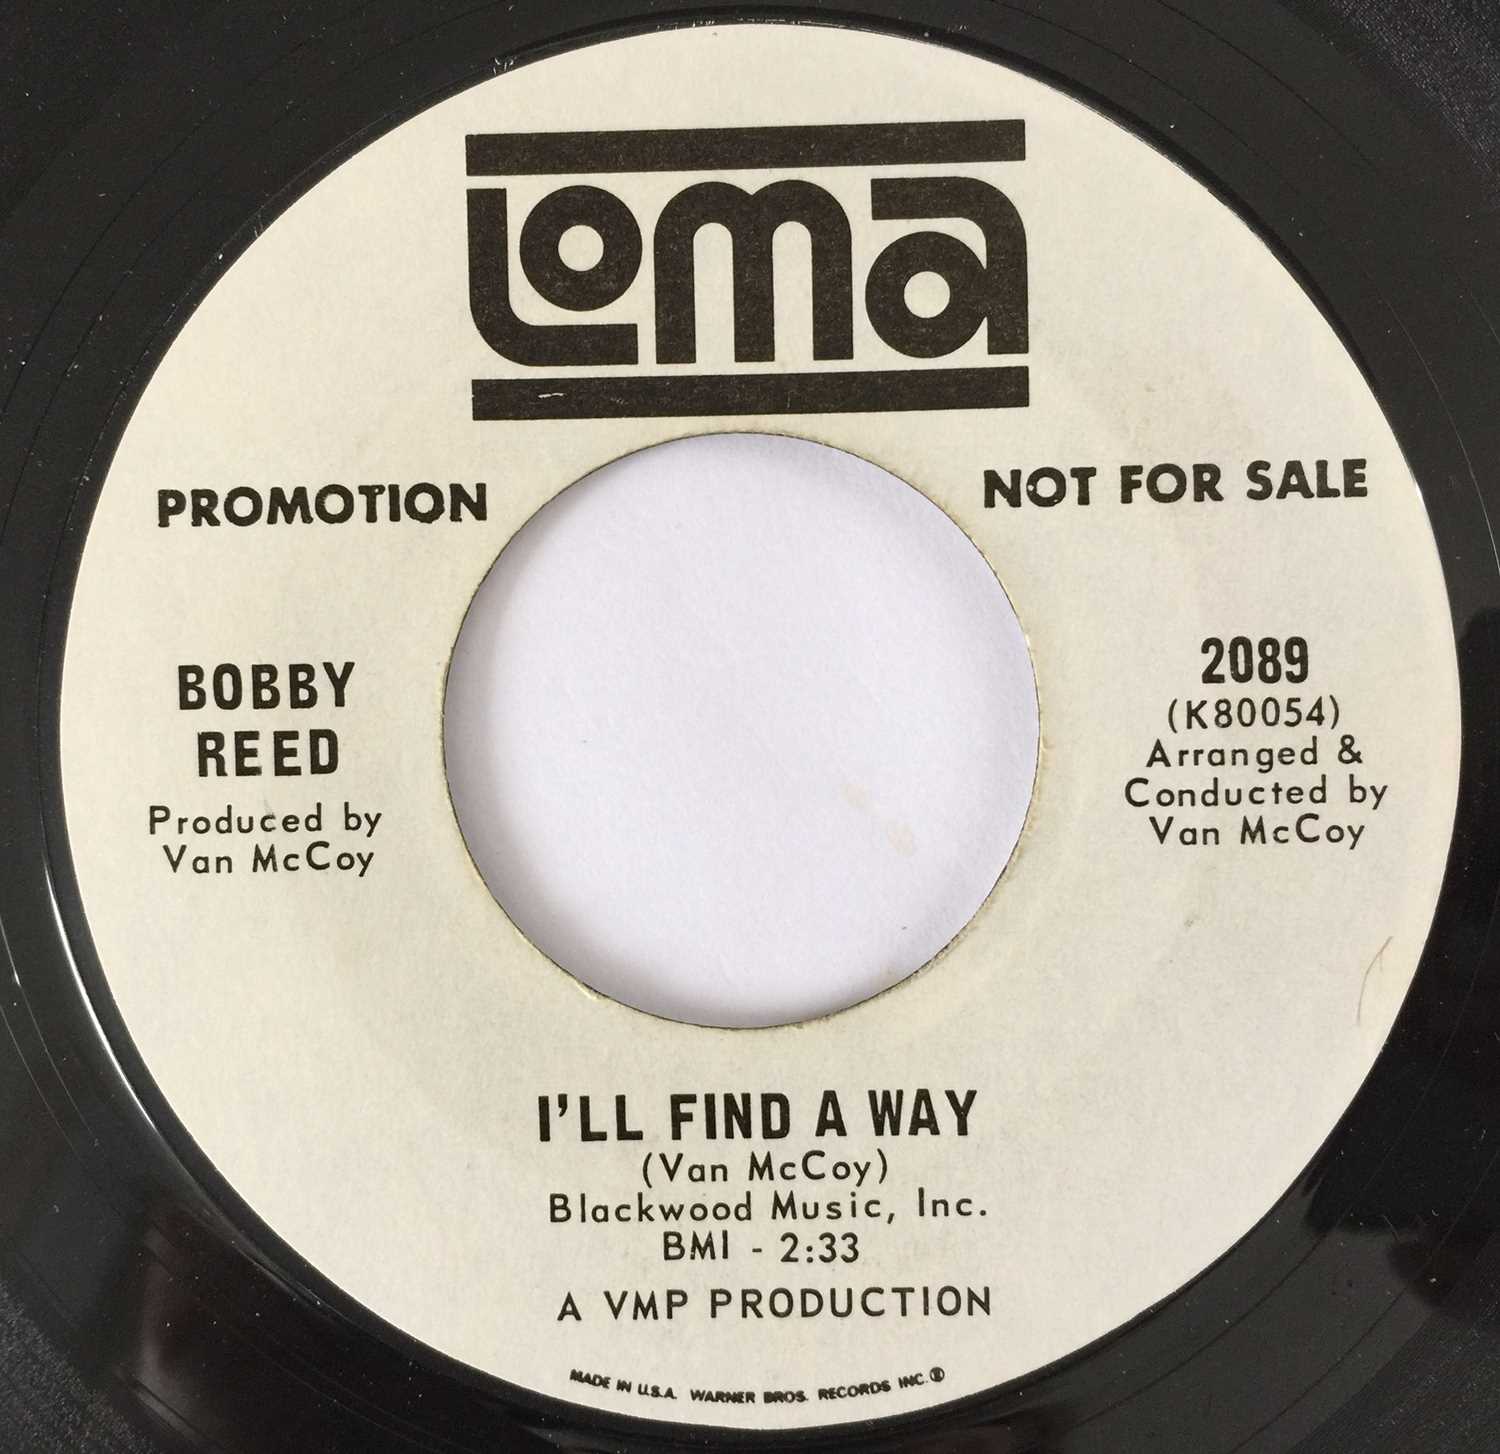 Lot 4 - BOBBY REED - I'LL FIND A WAY/ I WANNA LOVE YOU SO BAD 7" (US PROMO - LOMA 2089)